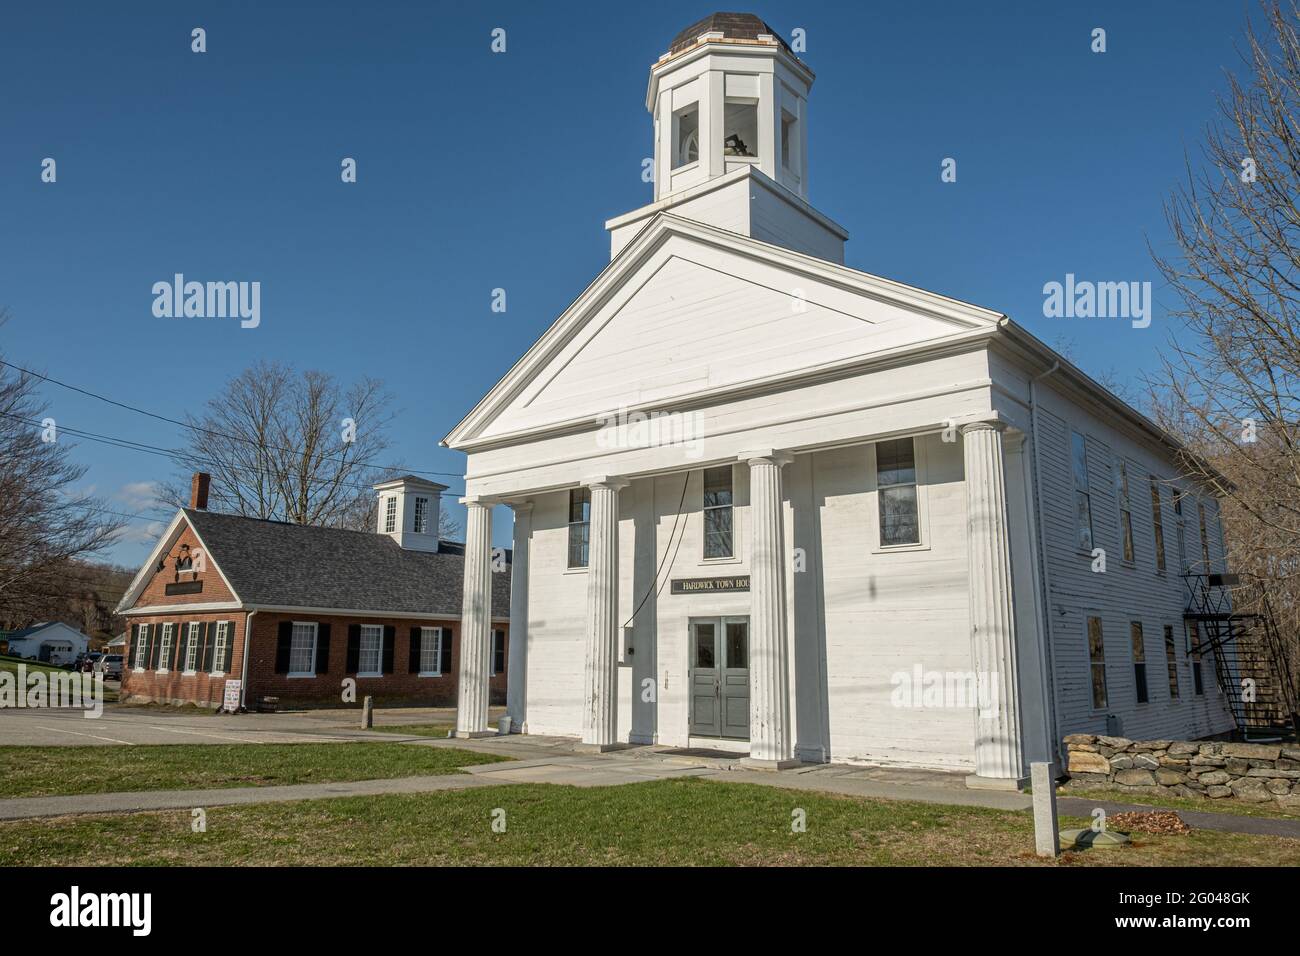 The Hardwick Town House, Hardwick, Massachusetts Stock Photo